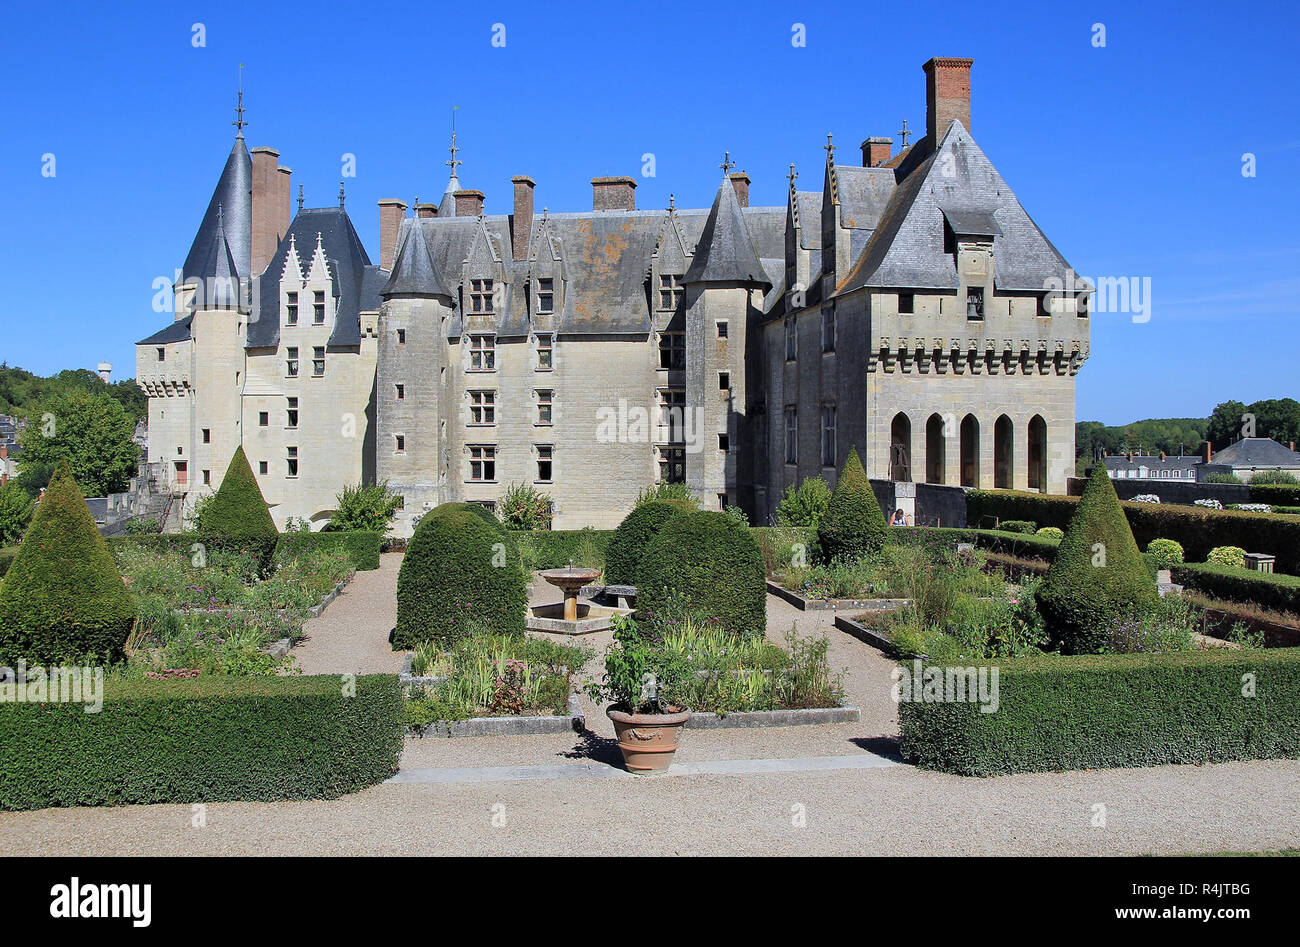 chateau de langeais on the loire,france Stock Photo